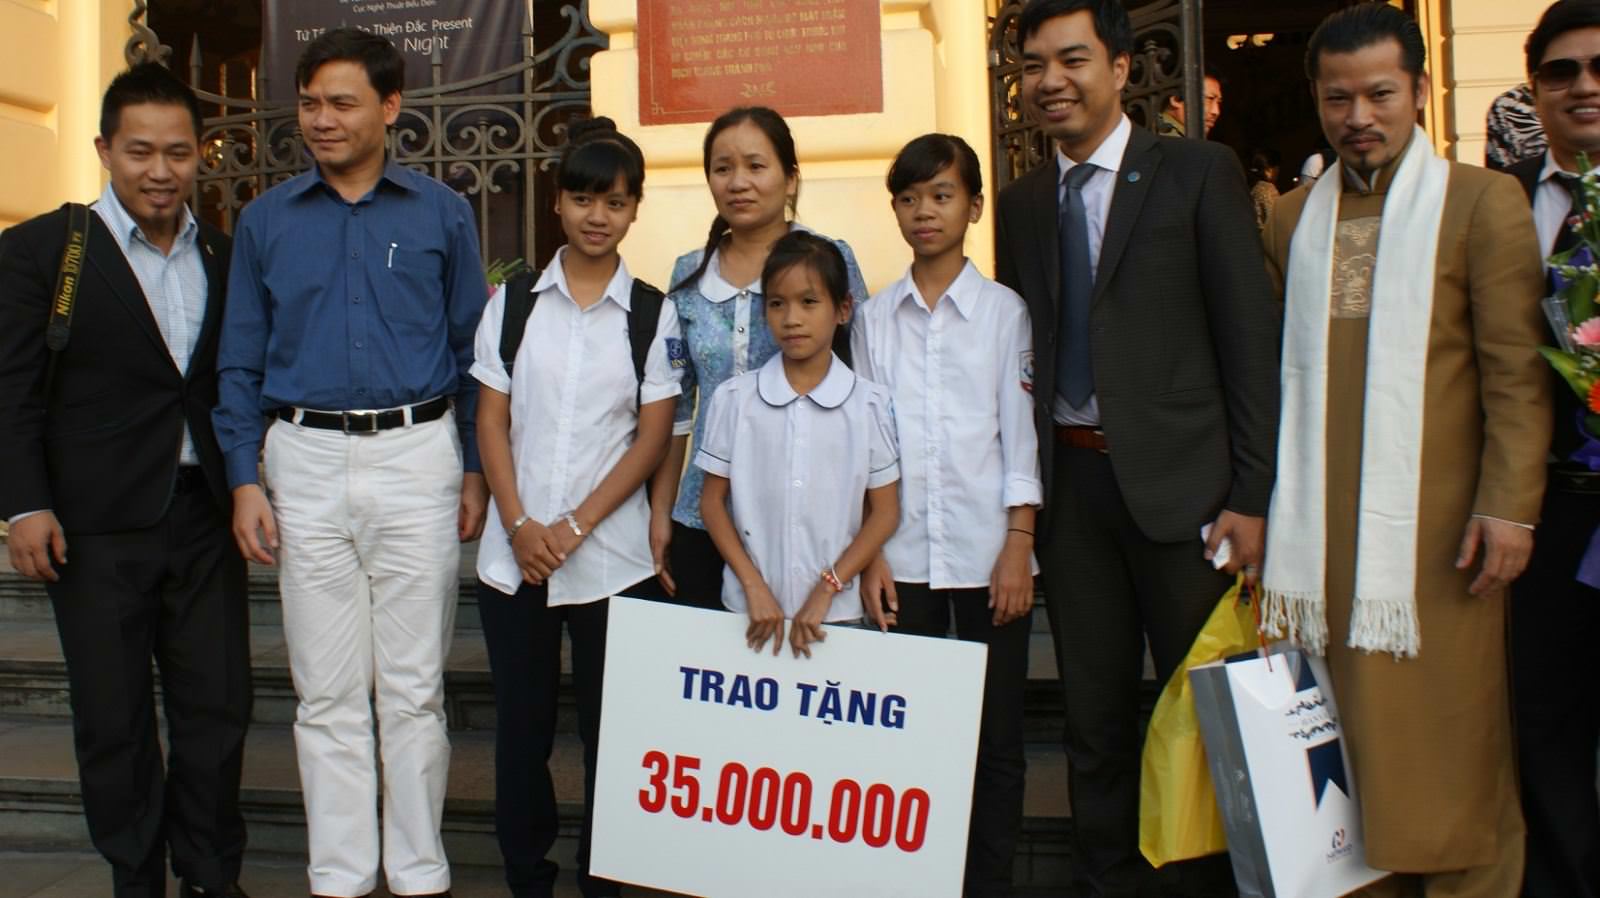 Chủ tịch Nguyễn Xuân Phú vinh dự nhận giải Doanh nhân xuất sắc” trong lễ trao giải “Doanh nhân- Nghiệp và đời” 6